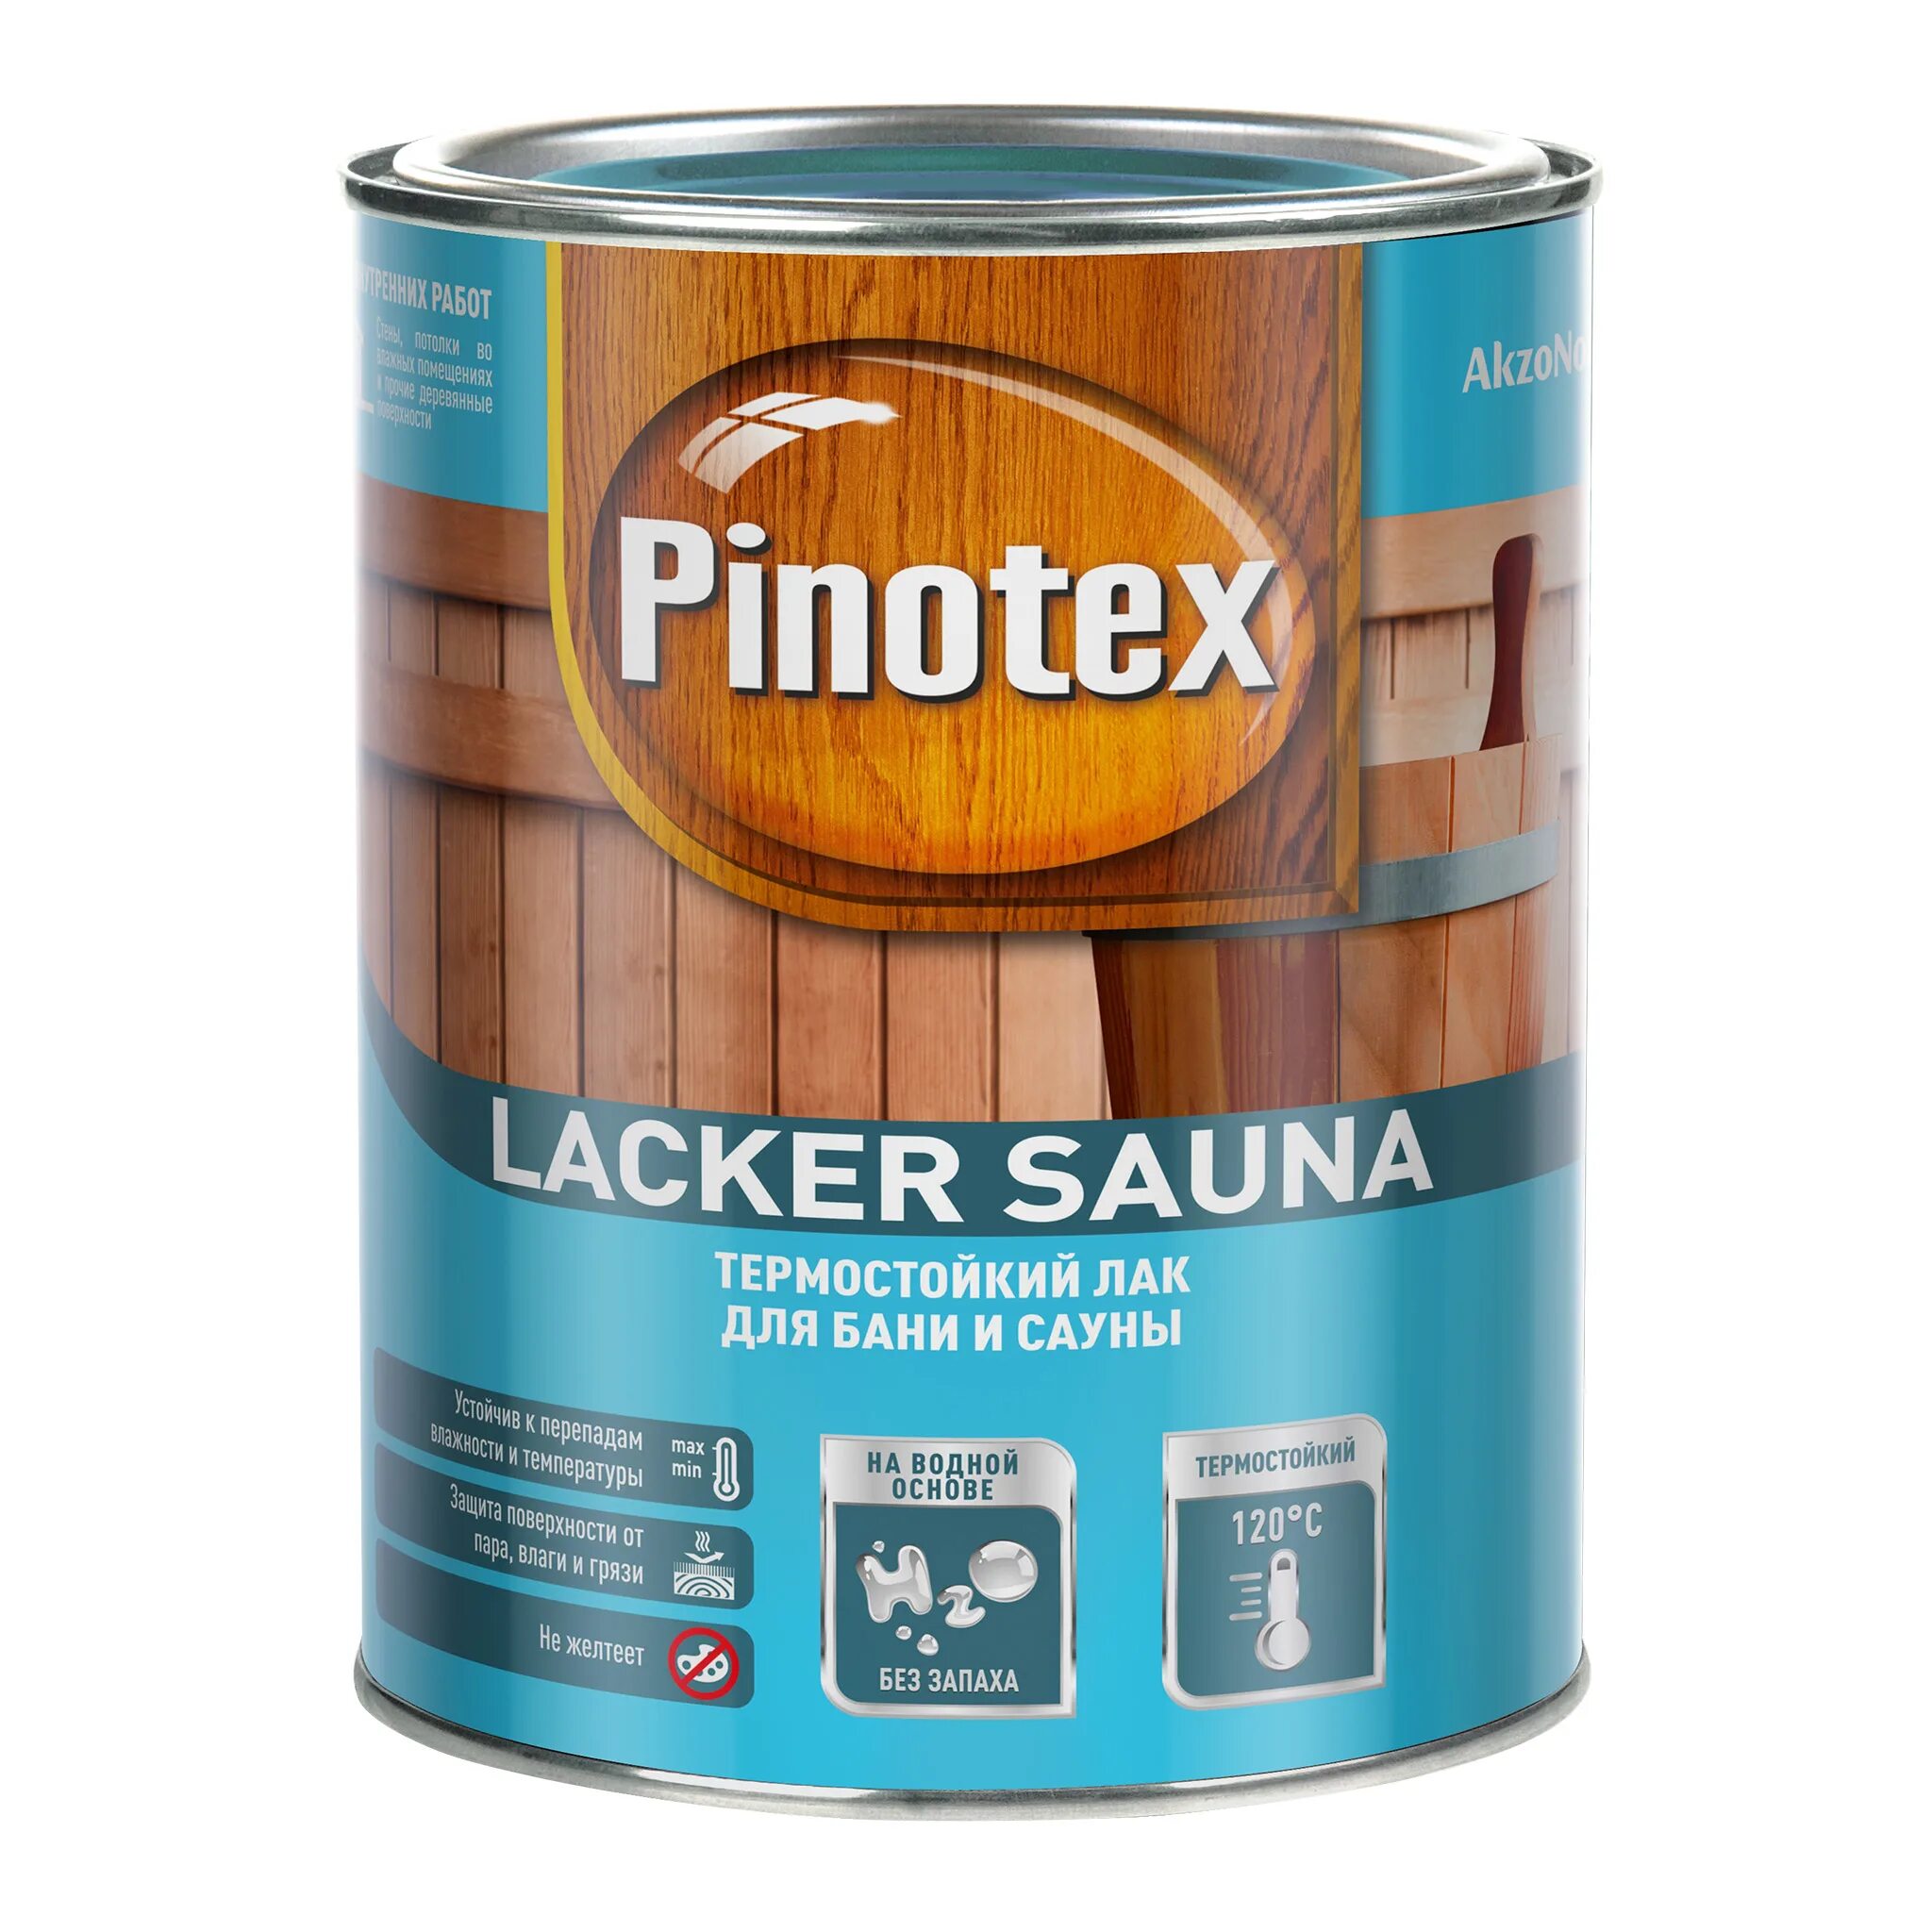 Лак Pinotex Lacker Aqua. Лак матовый Pinotex Lacker Aqua 10. Pinotex Lacker Sauna 2,7л. Лак для дерева Pinotex Lacker Aqua 10 мат 1л. Лак для мебели без запаха